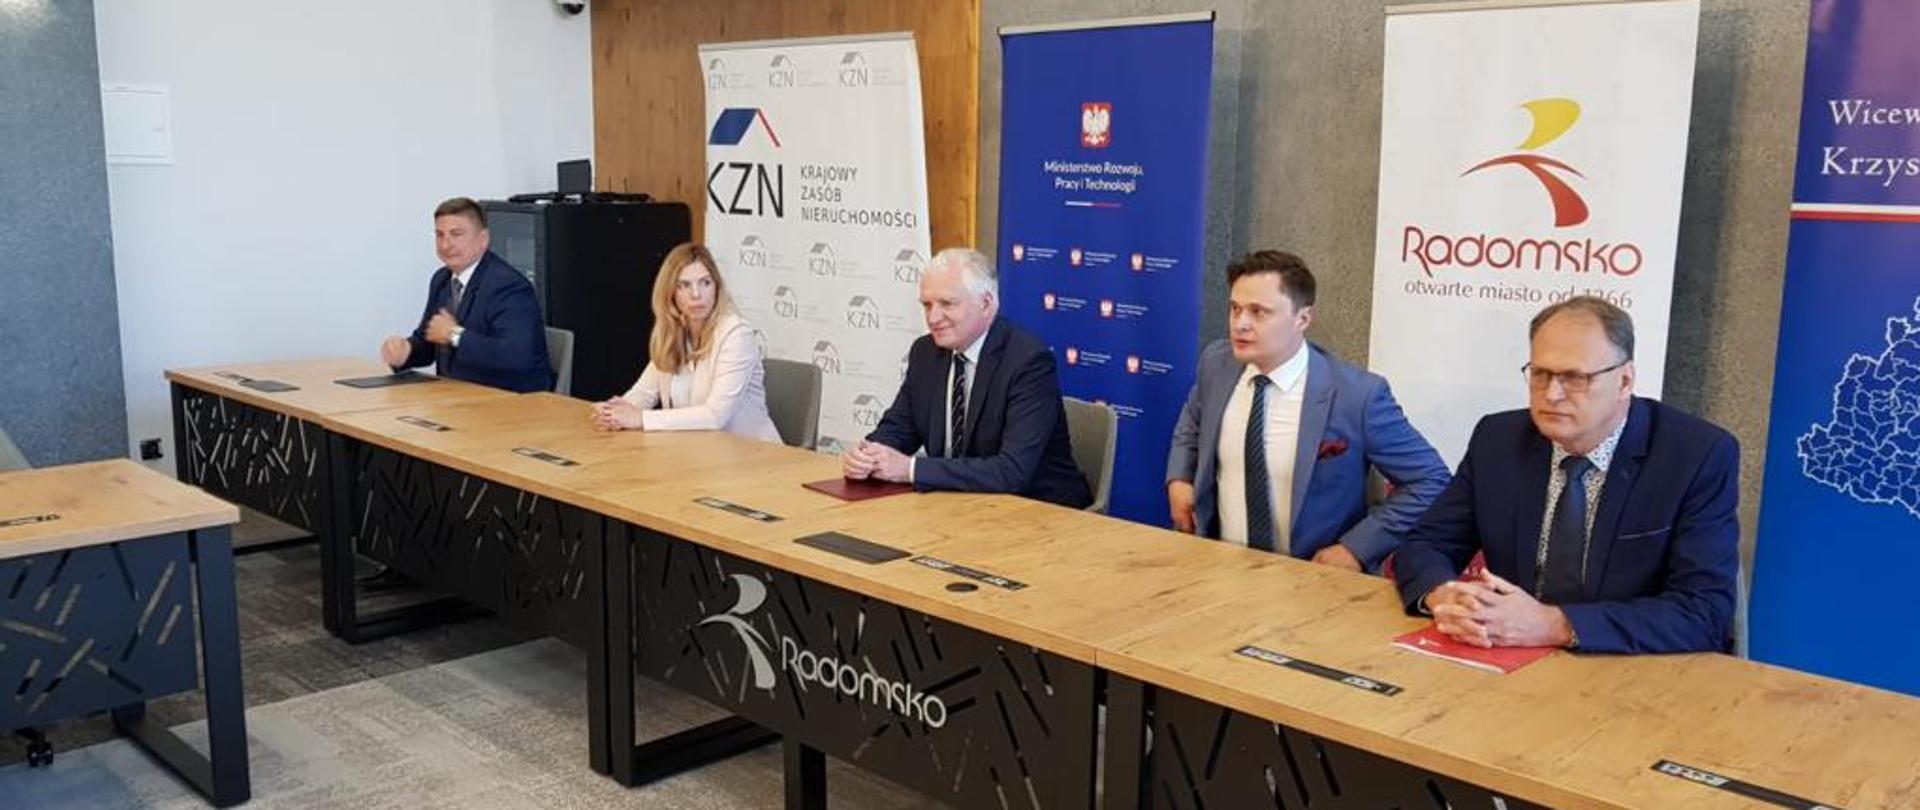 Na zdjęciu między innymi wicepremier Jarosław Gowin i wiceminister Anna Kornecka na konferencji w Radomsku dot. powołania nowej spółki SIM